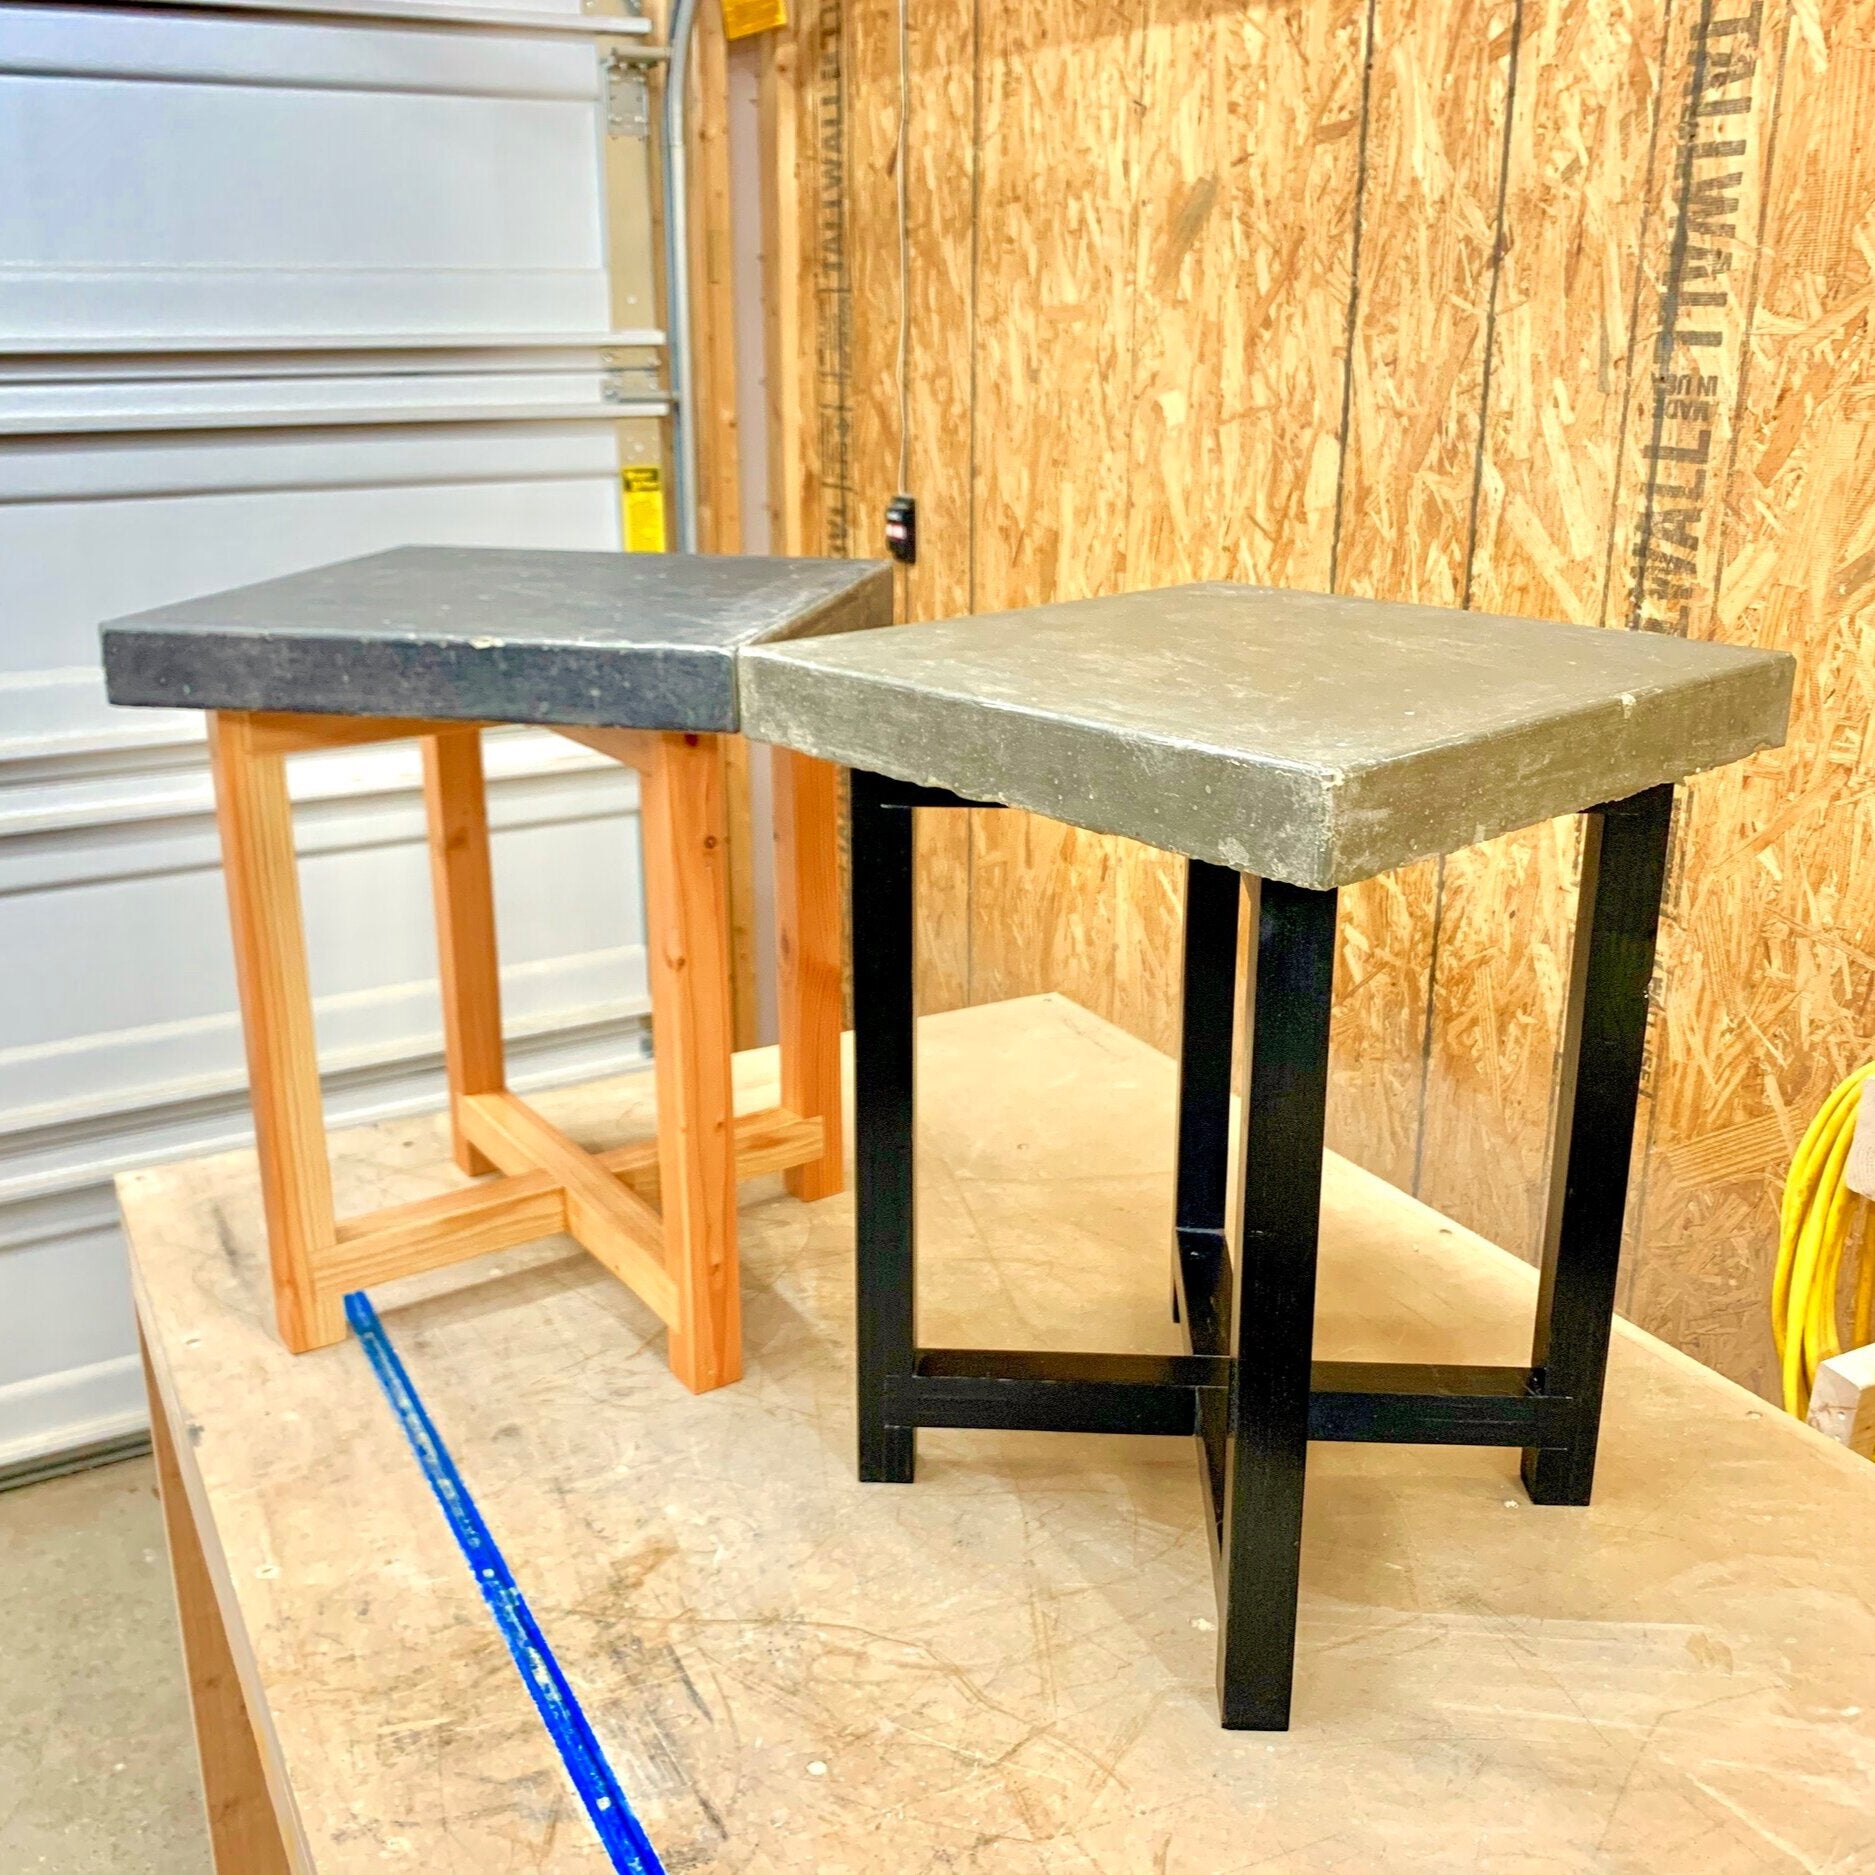 Spencley Design Co - CONCRETE SIDE TABLE - PLANS